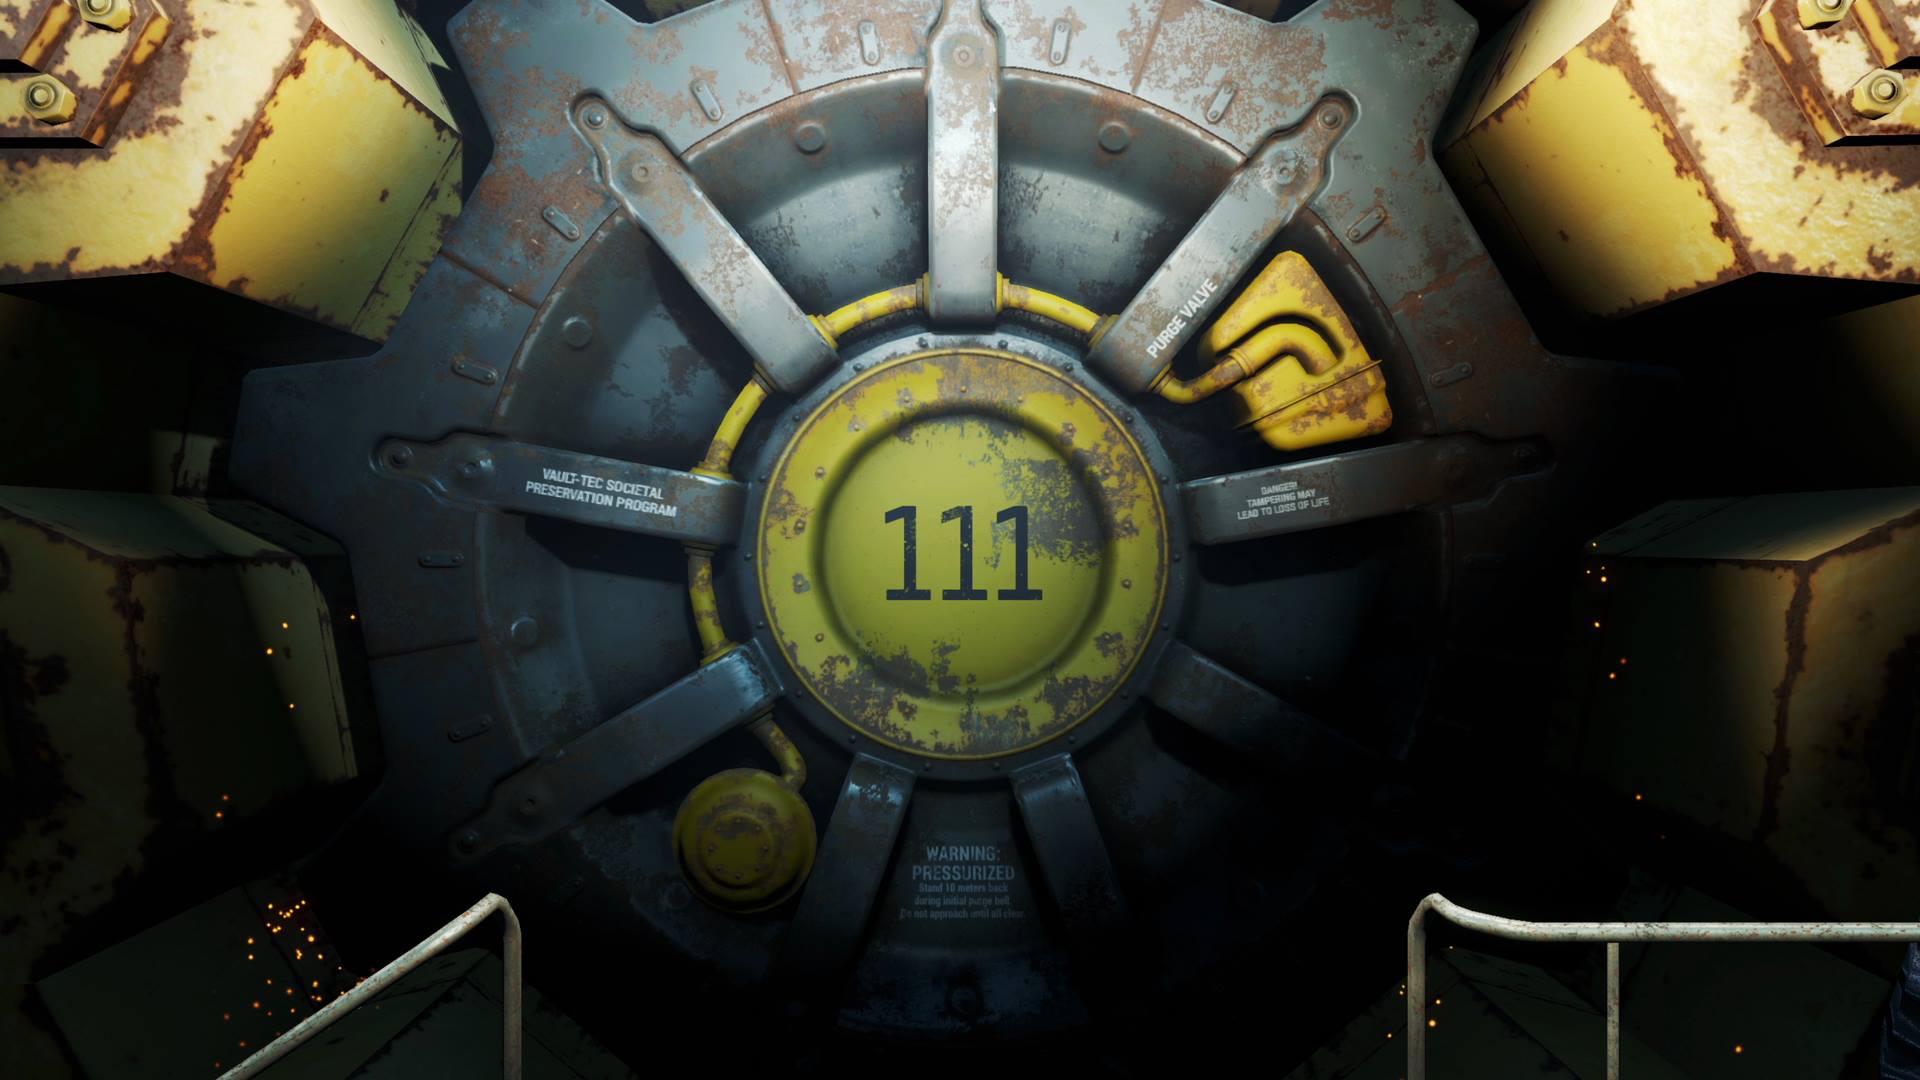 The door of Vault 111 in Fallout 4.